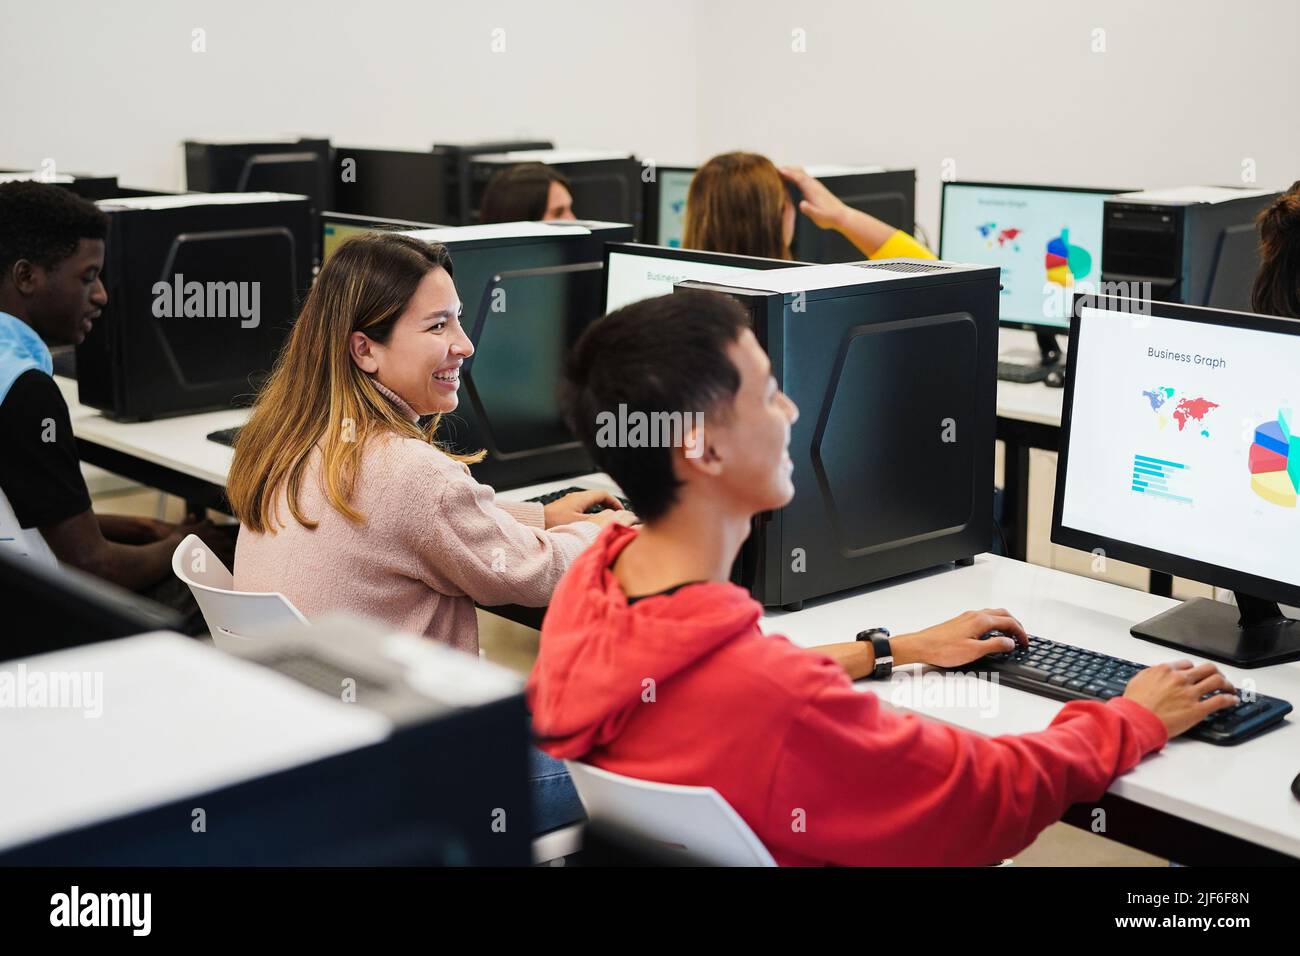 Junge Studenten mit Computern in der Technologie-Klasse im Schulzimmer - Fokus auf Mitte Mädchen Gesicht Stockfoto